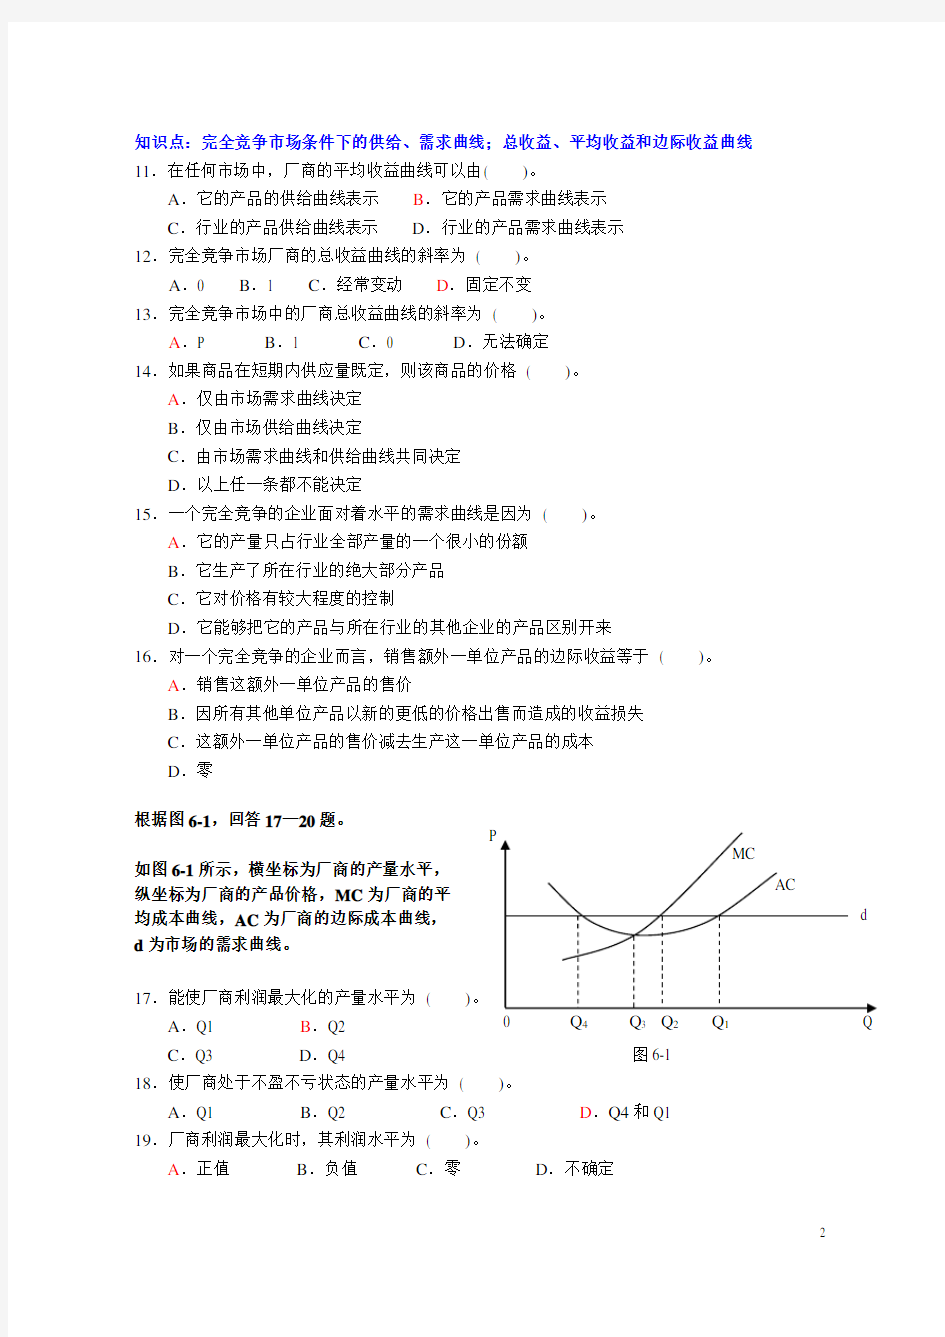 微观经济学 --- 第六章{完全竞争理论}  习题 (上海商学院)